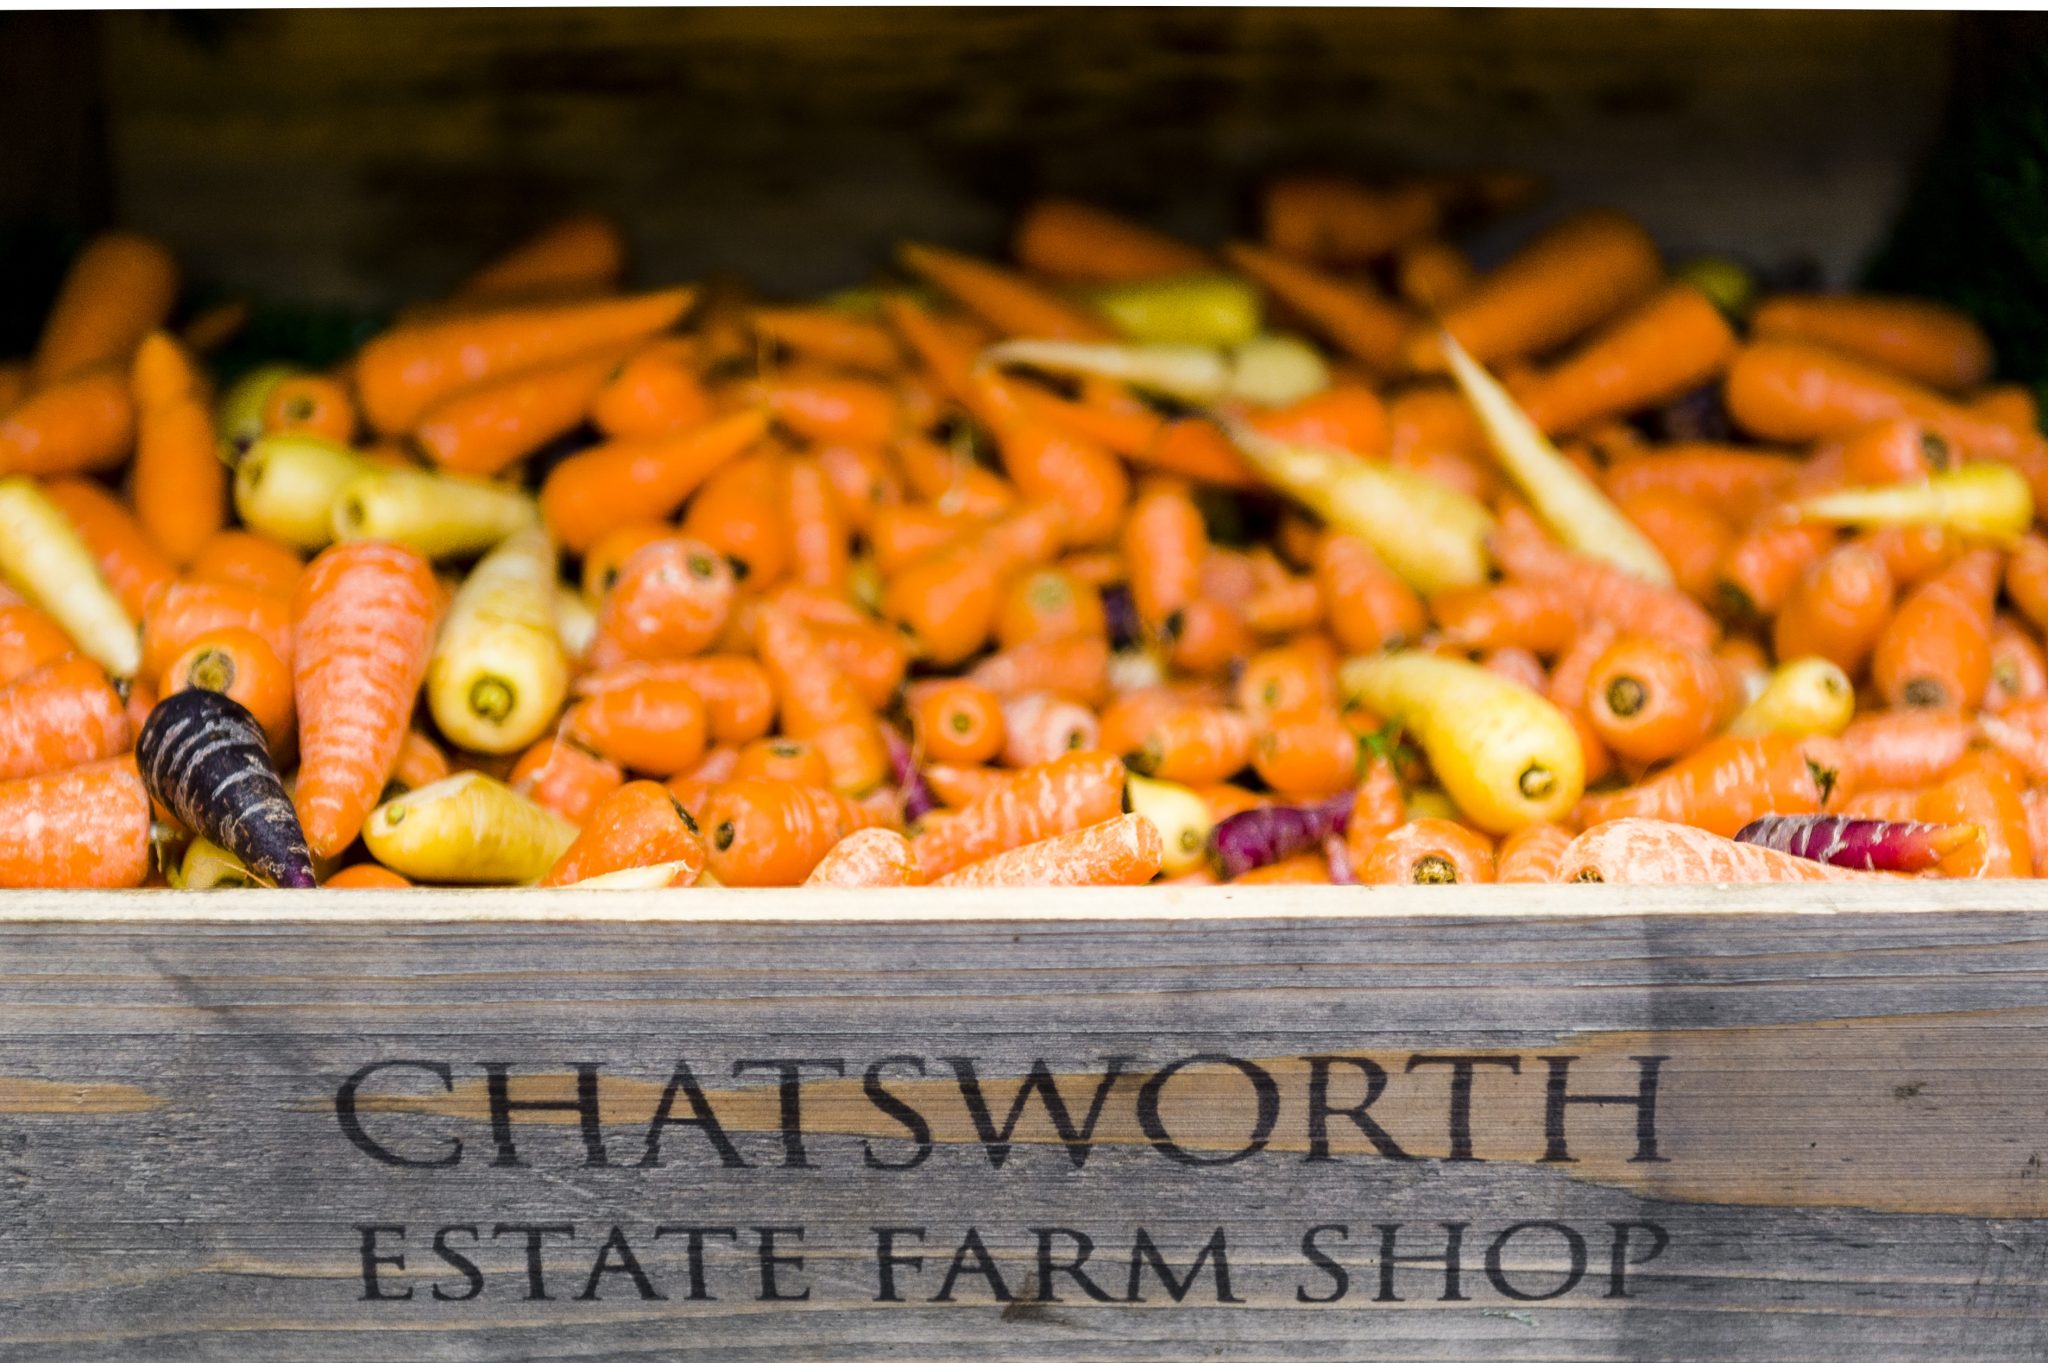 Chatsworth Estate Farm Shop Announced as Finalist in Farm Shop & Deli Awards 2017